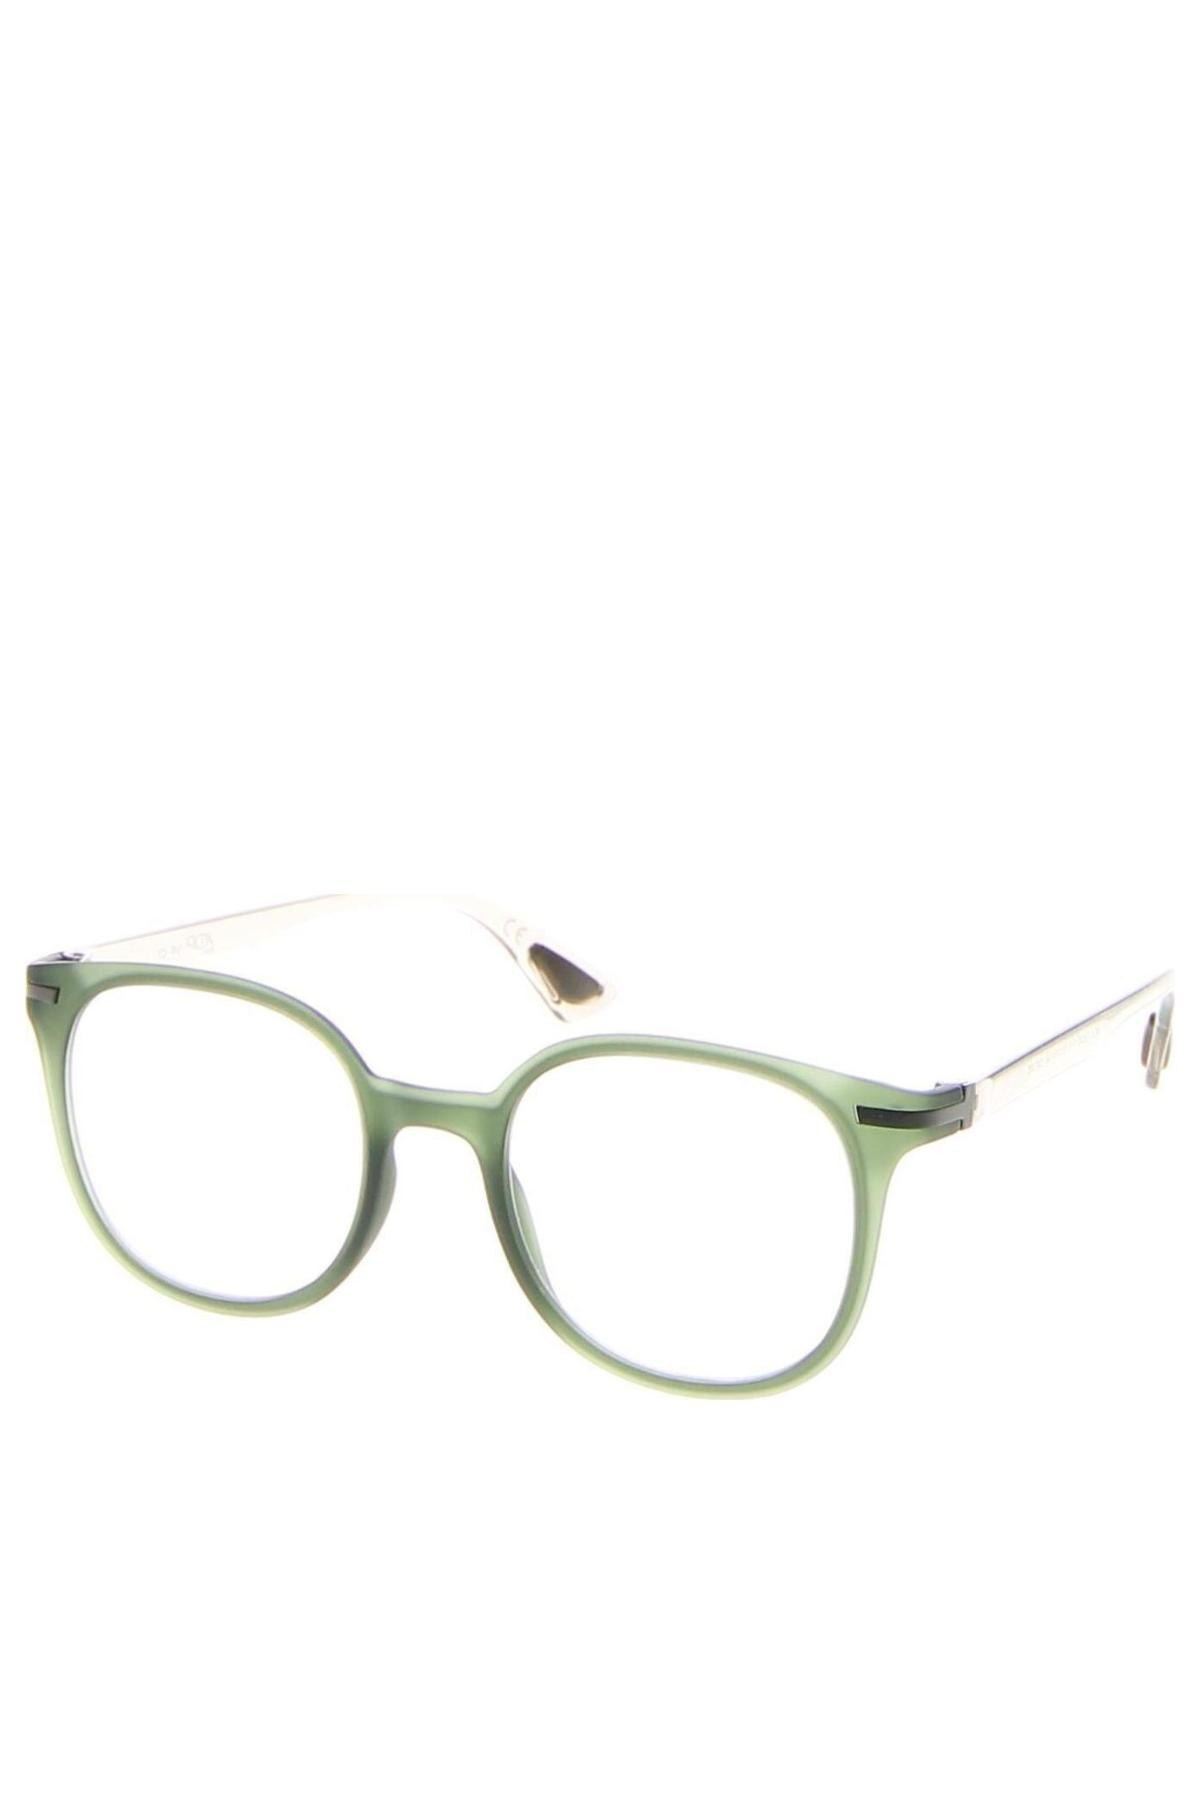 Brillengestelle AirDP, Farbe Grün, Preis € 101,60